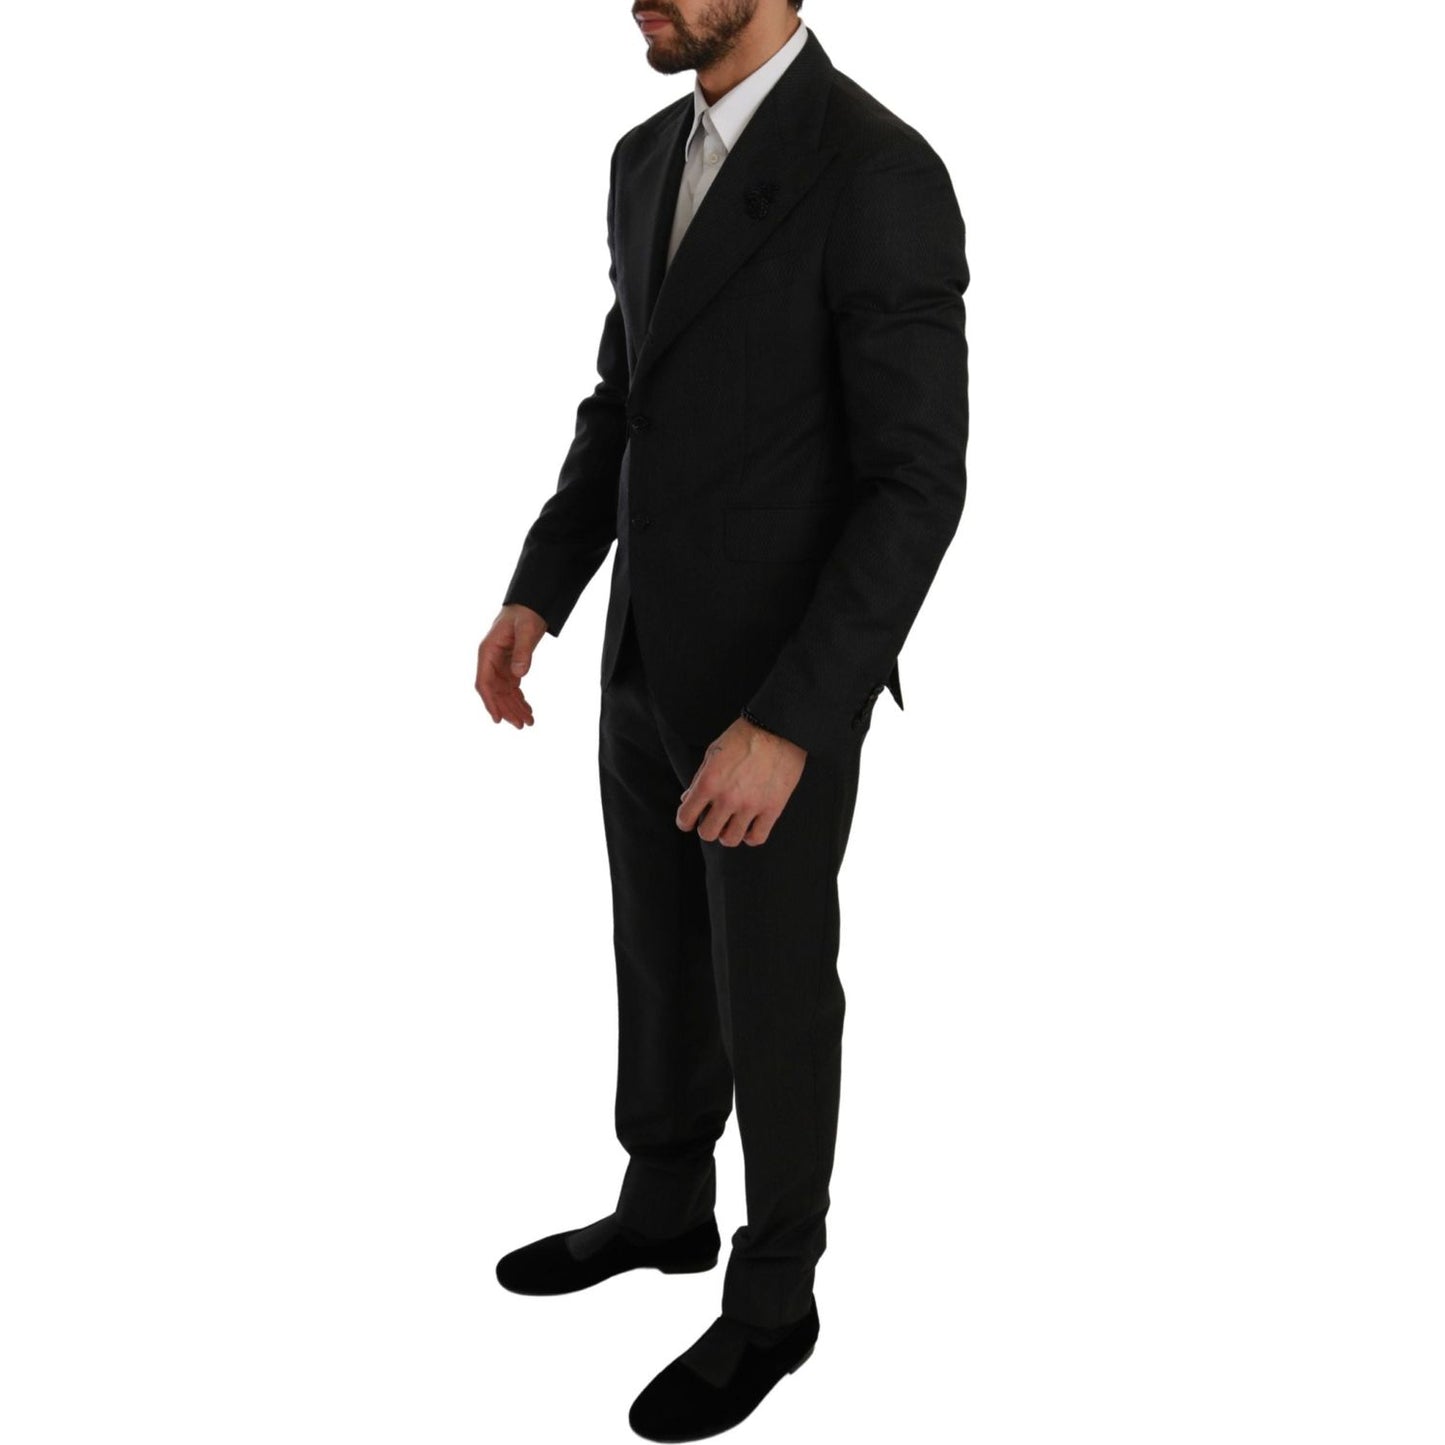 Elegant Black Crystal-Embellished Two-Piece Suit